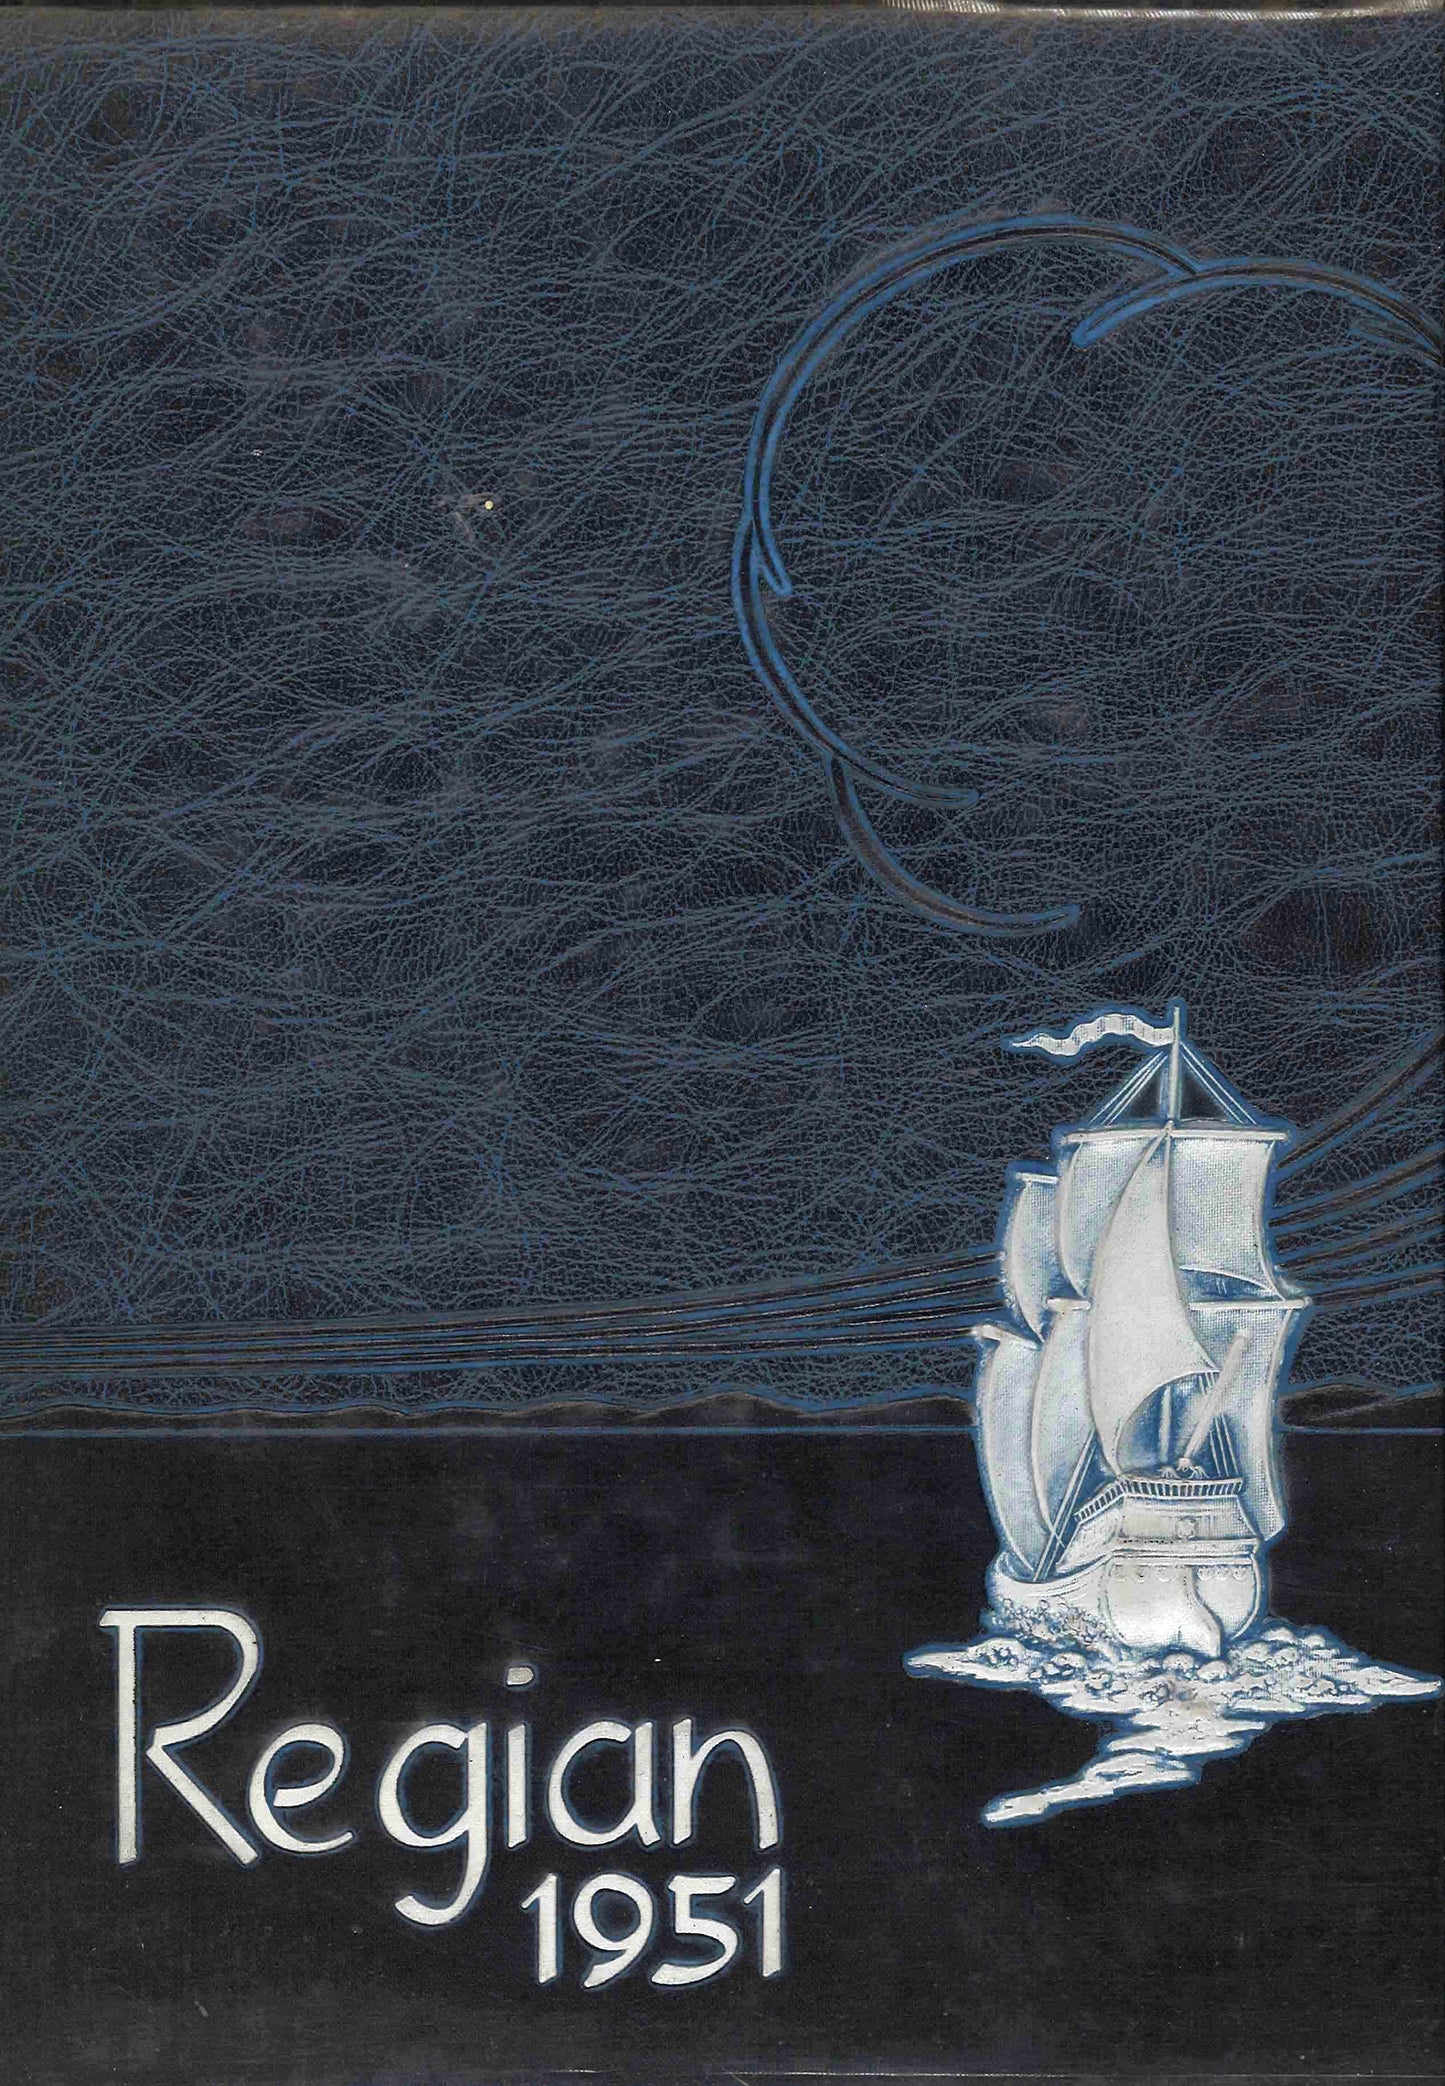 The Regian - 1951